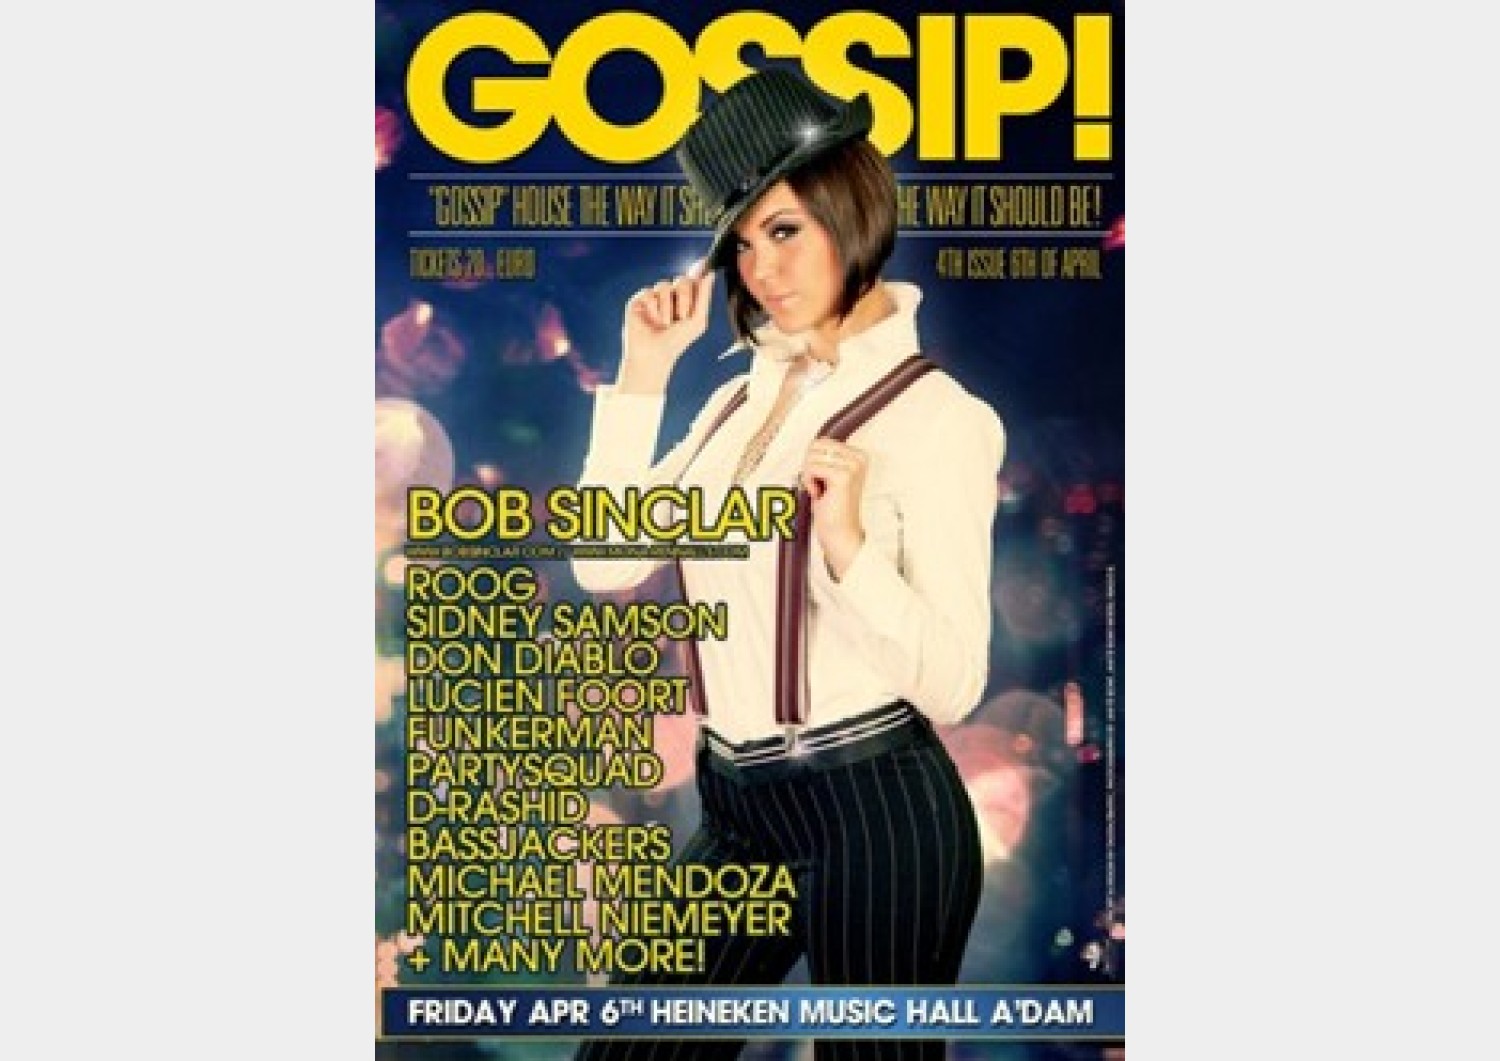 Party nieuws: Gossip! XXL Edition in Heineken Music Hall op 6 april